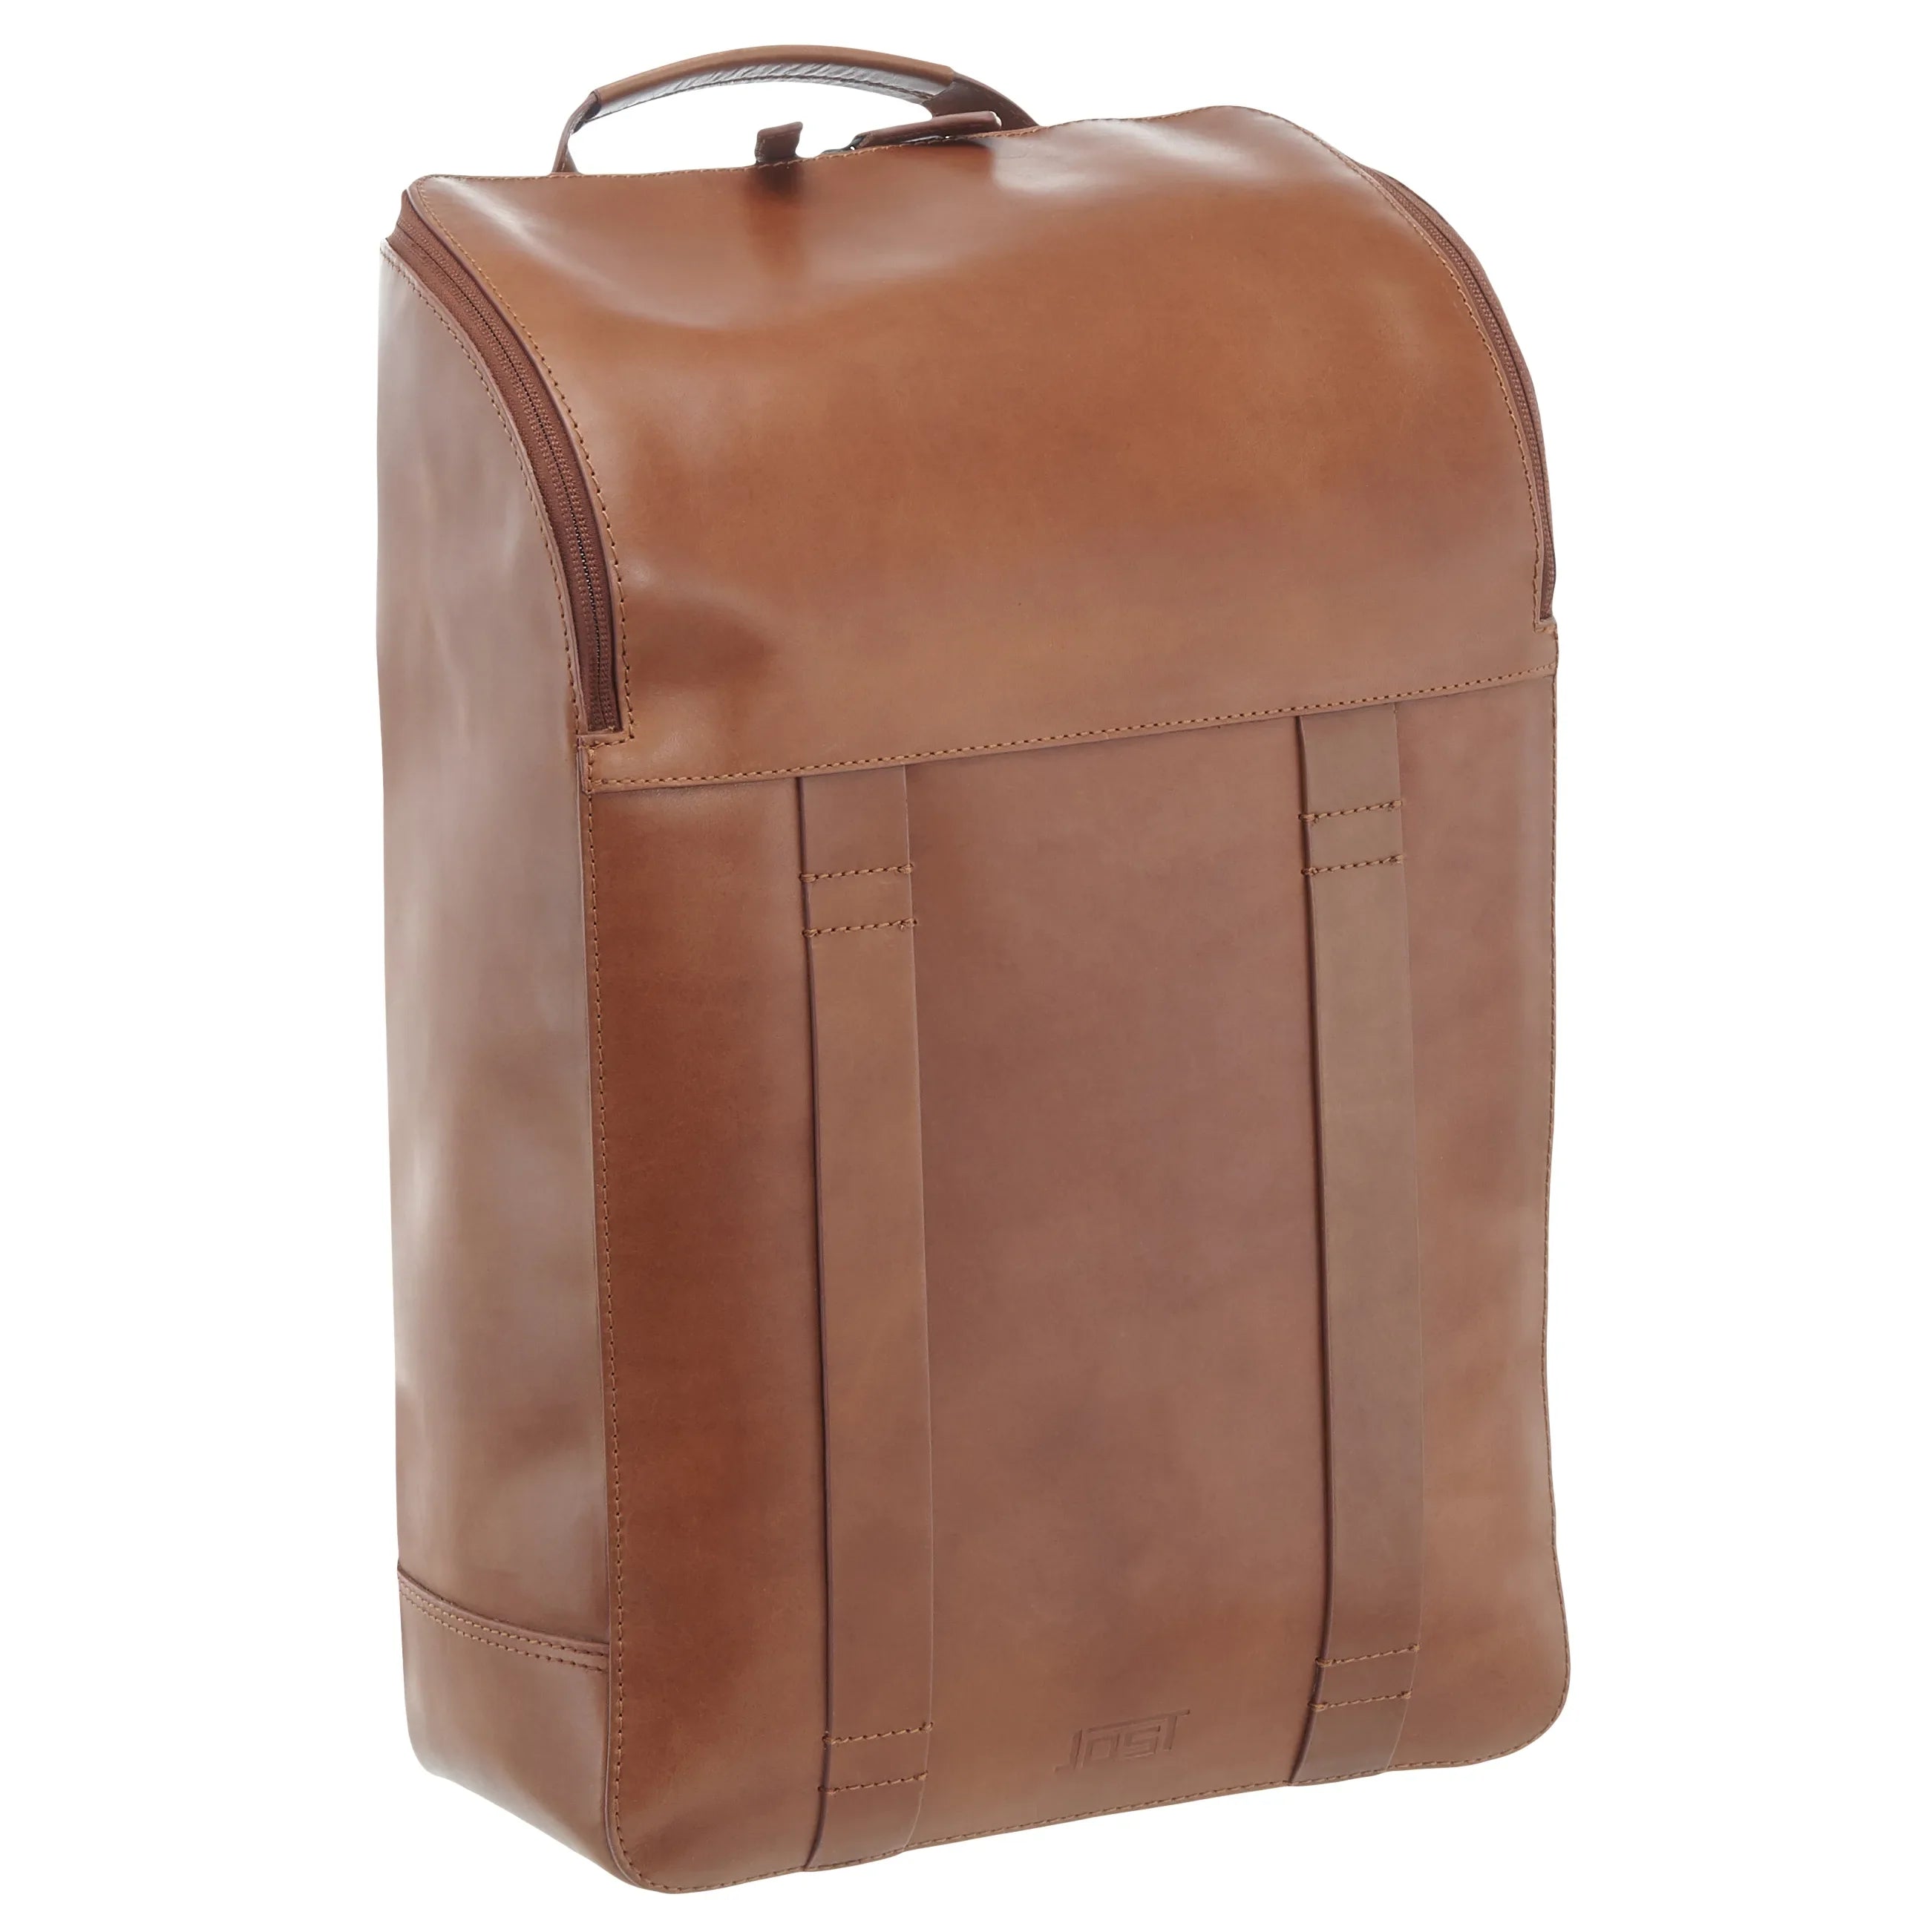 Jost Aarhus daypack backpack 45 cm - cognac